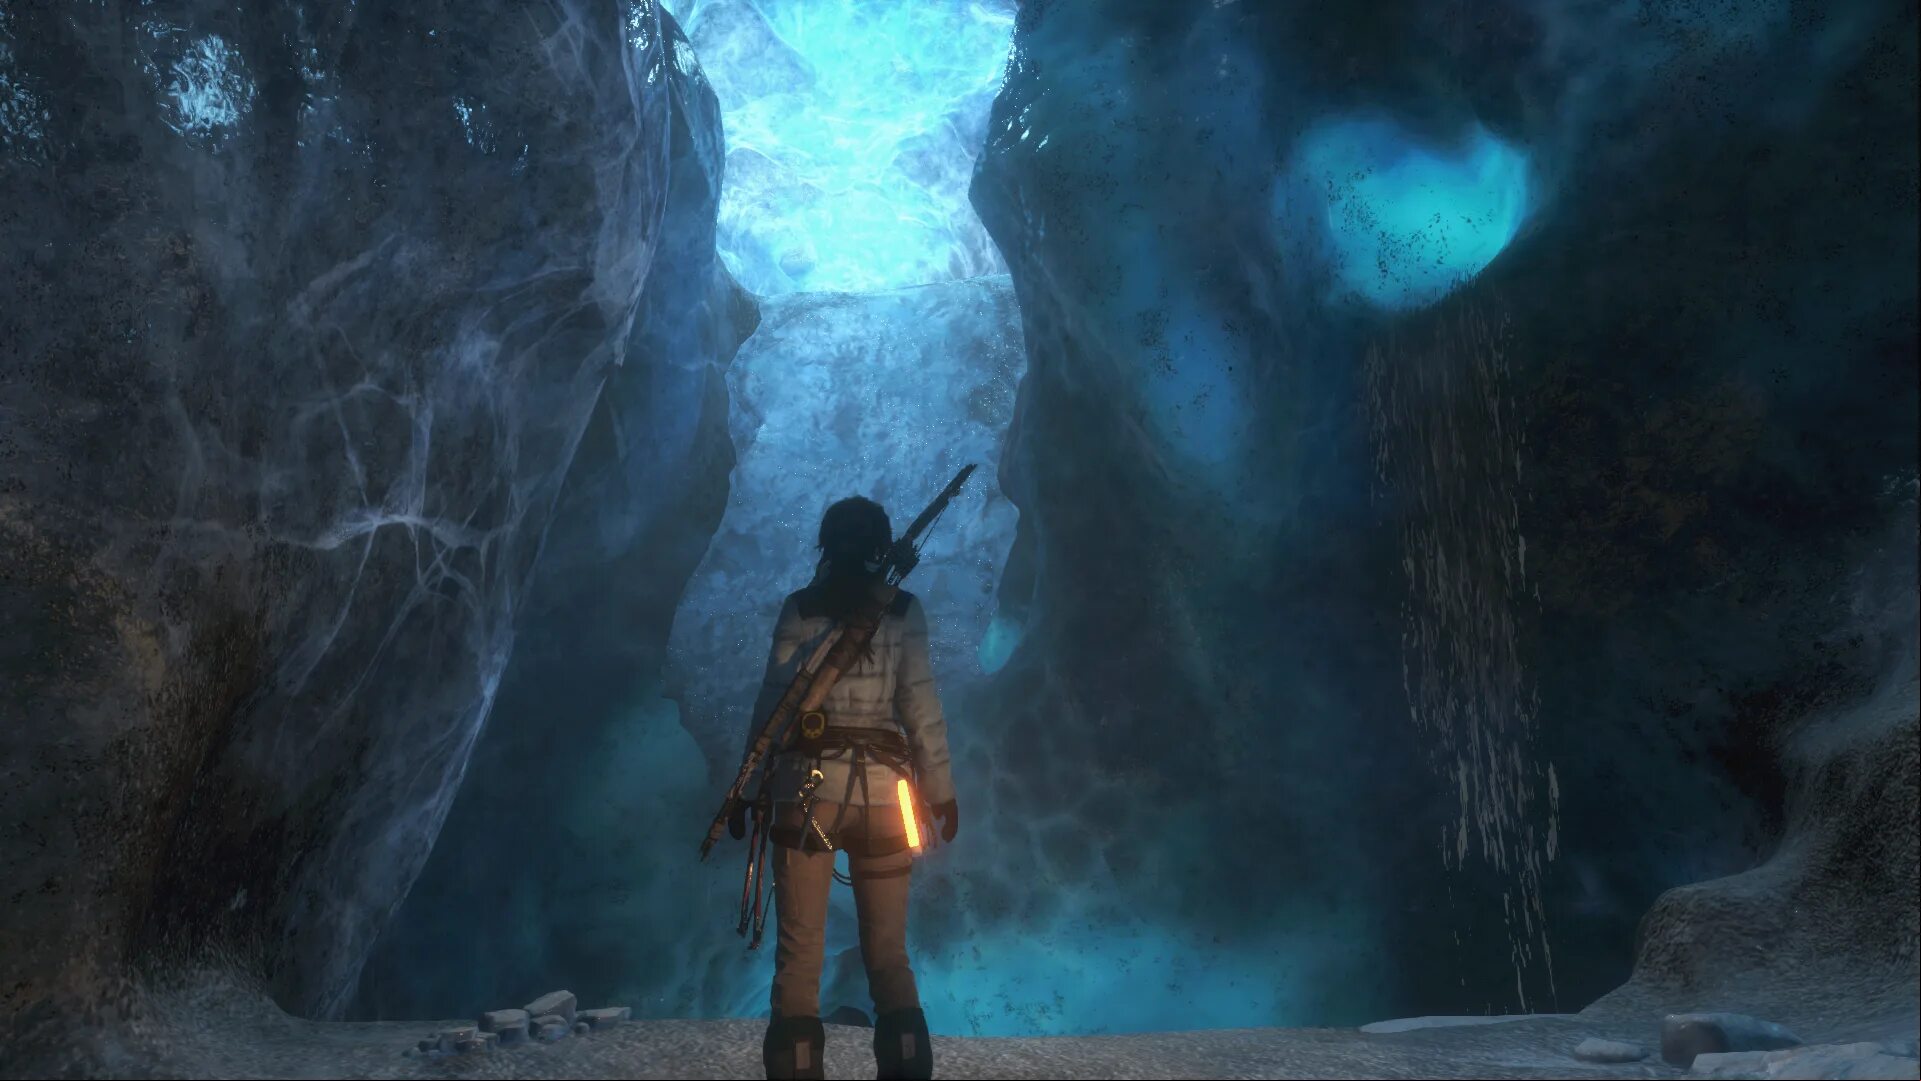 Lara croft island. Ледяная пещера томб Райдер. Томб Райдер пещеры. Tomb Raider Ледяная пещера. Томб Райдер Сибирская глушь.